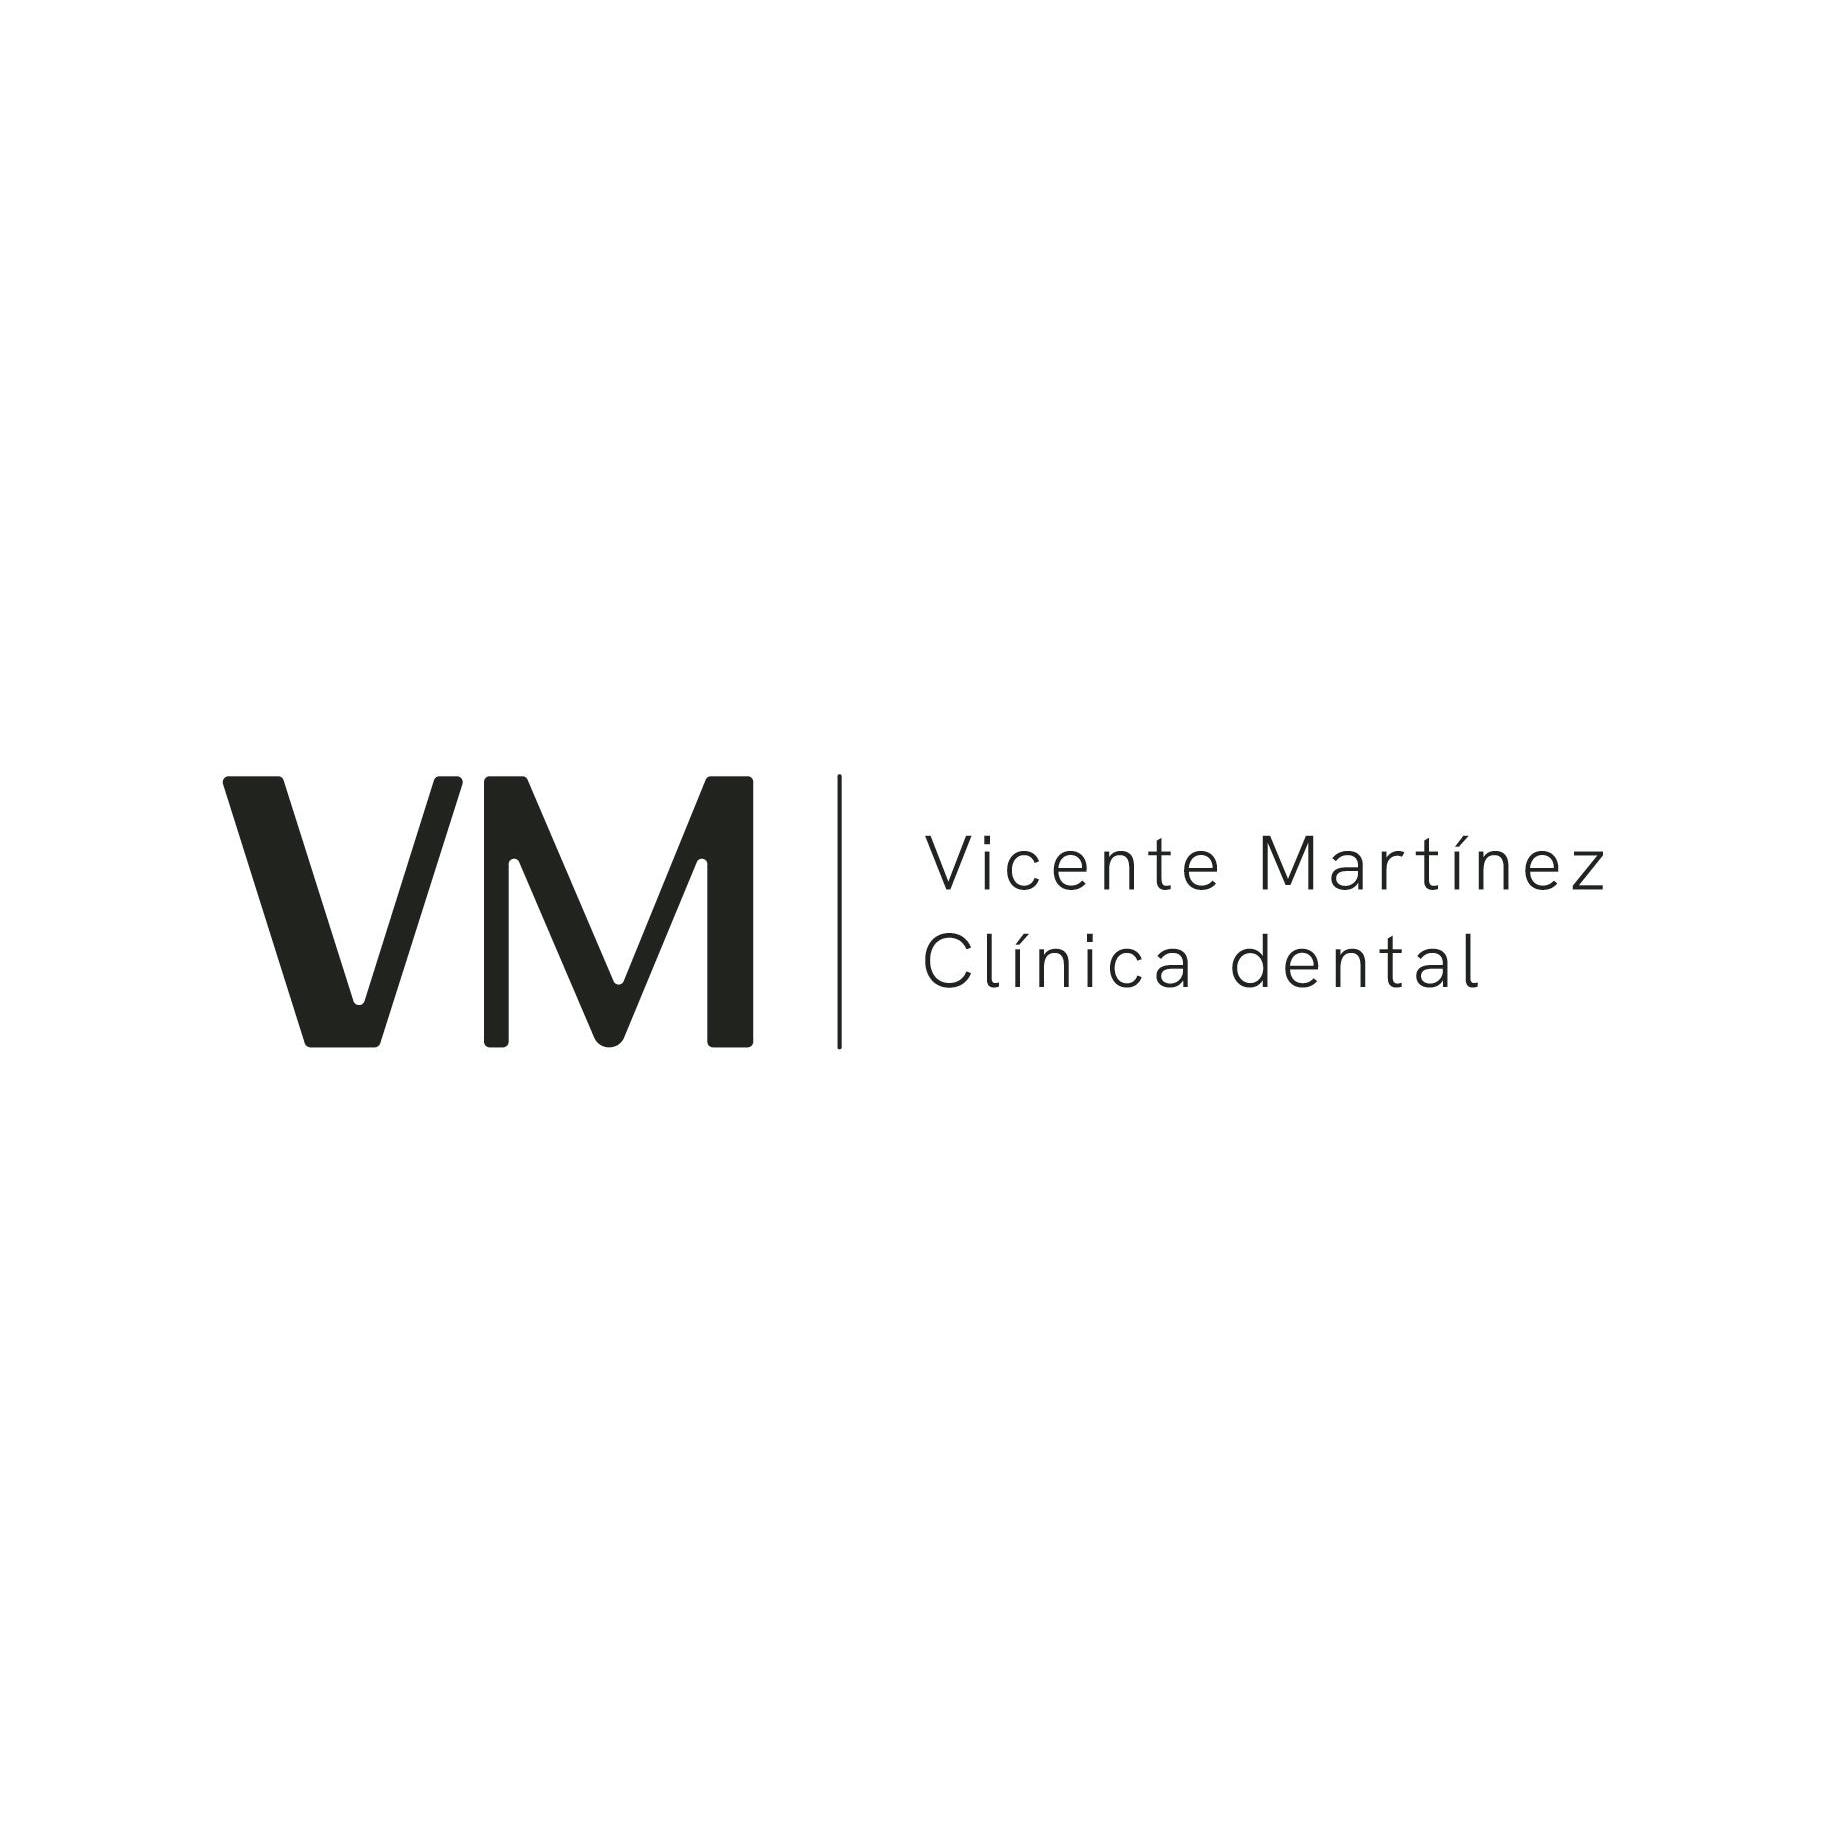 Clínica Dental Vicente Martínez VM Logo